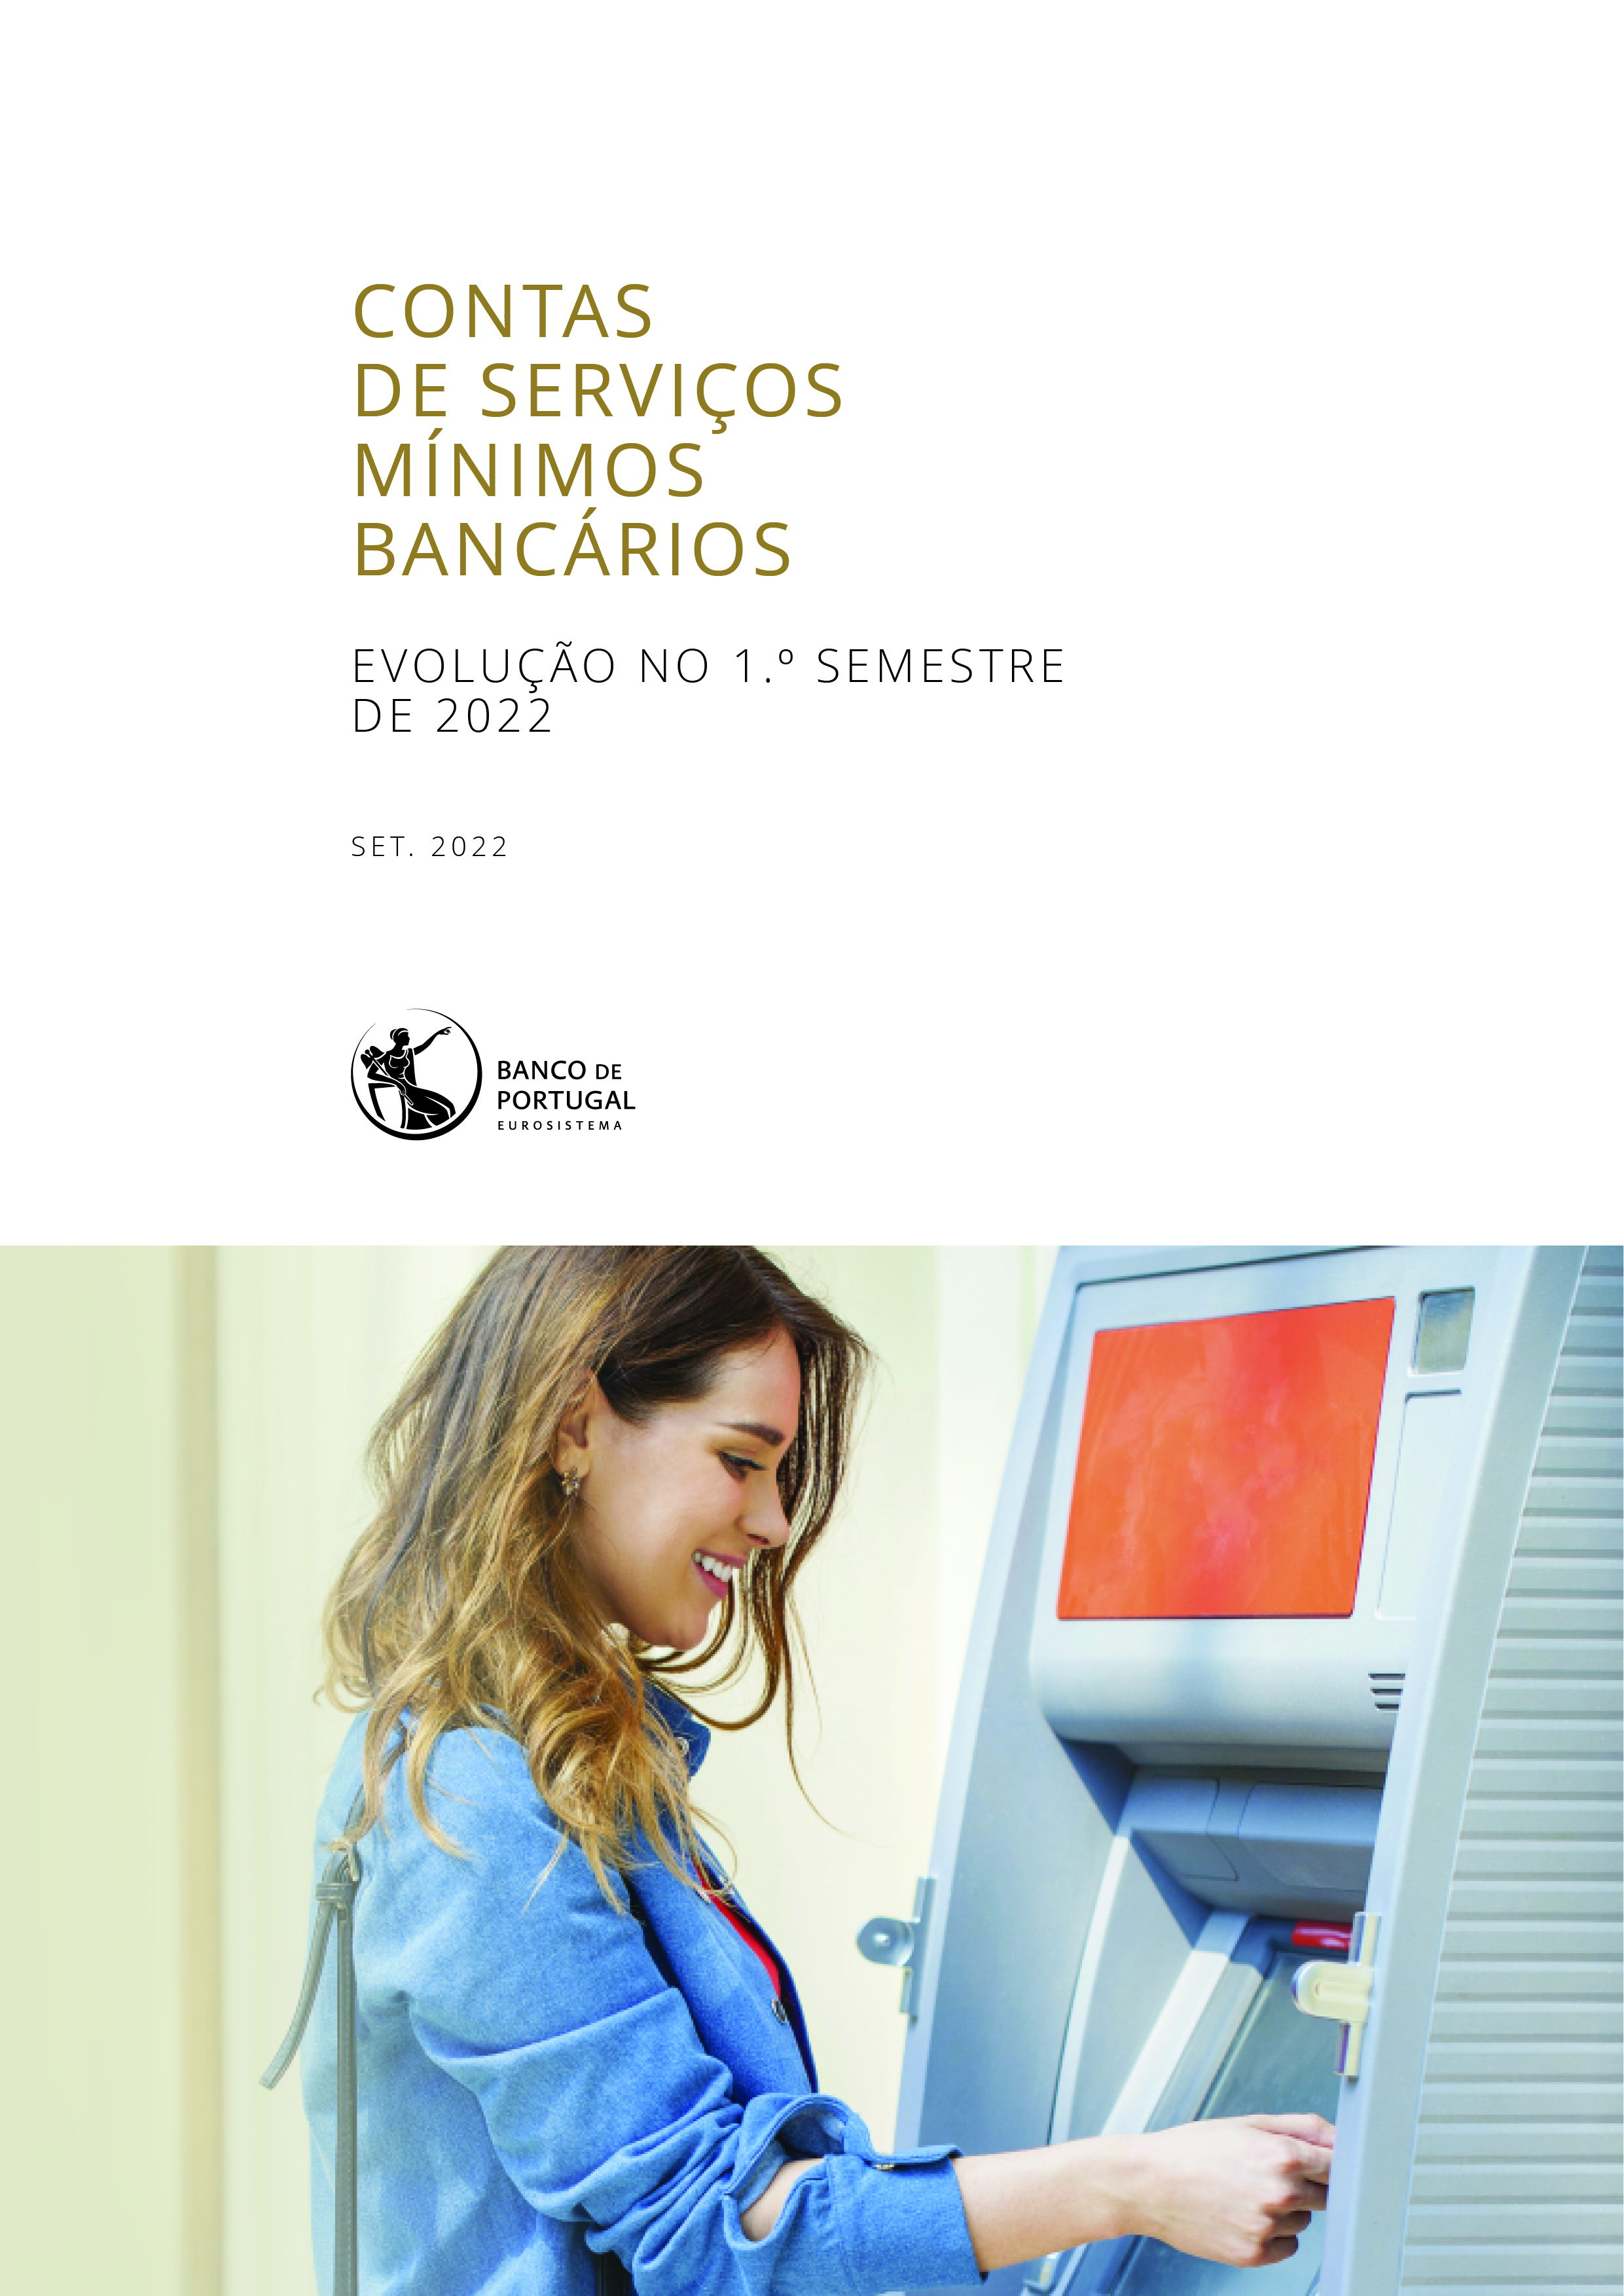 Contas de serviços mínimos bancários - evolução no 1.º semestre de 2022